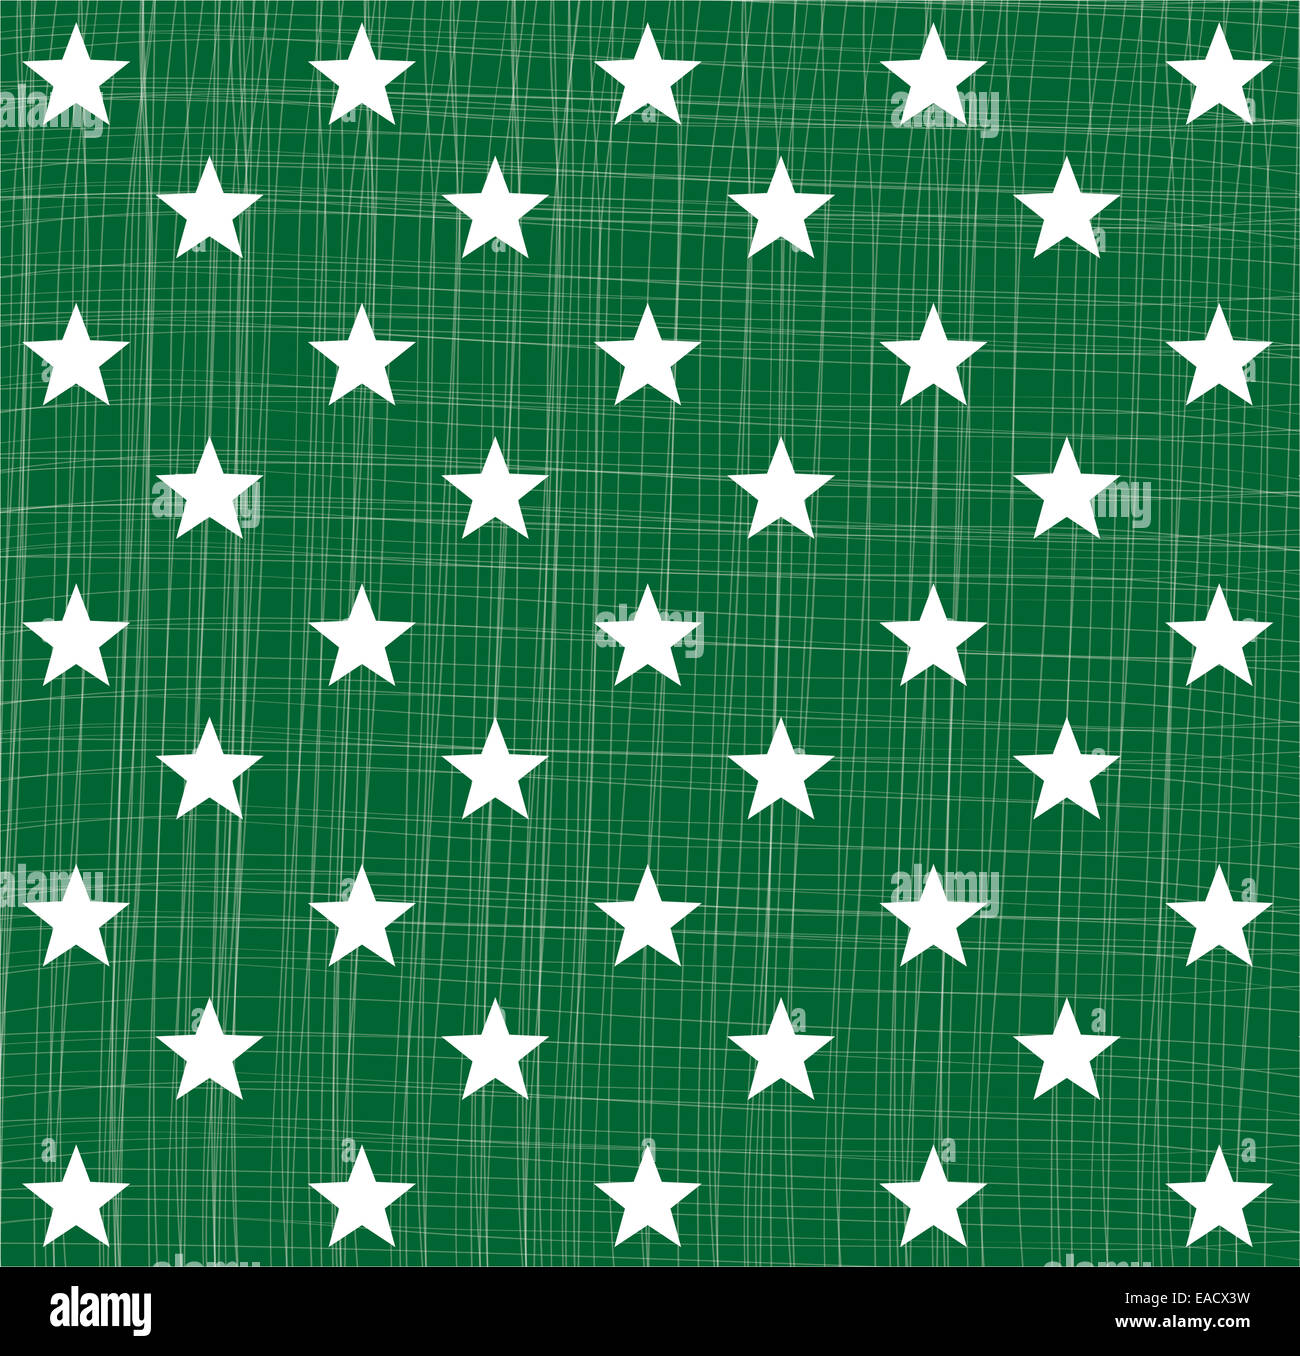 Stern Sterne Sternmuster Muster Pattern Sternenmuster gruen Kontur Struktur Hintergrund Weihnachten Christmas Heilig Abend Grafi Stock Photo